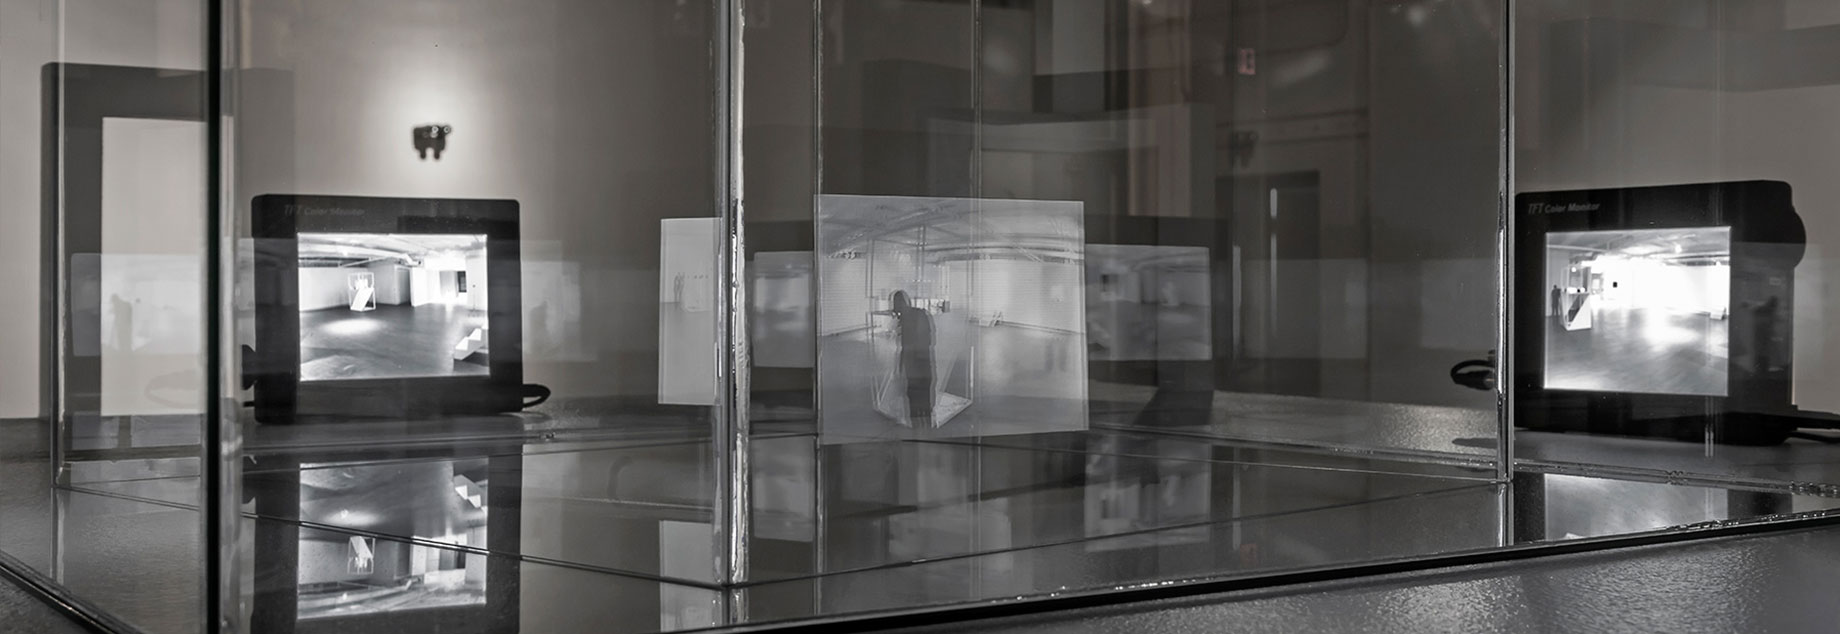 Alexander Pilis, anyeverything (installation detail), 2015. 